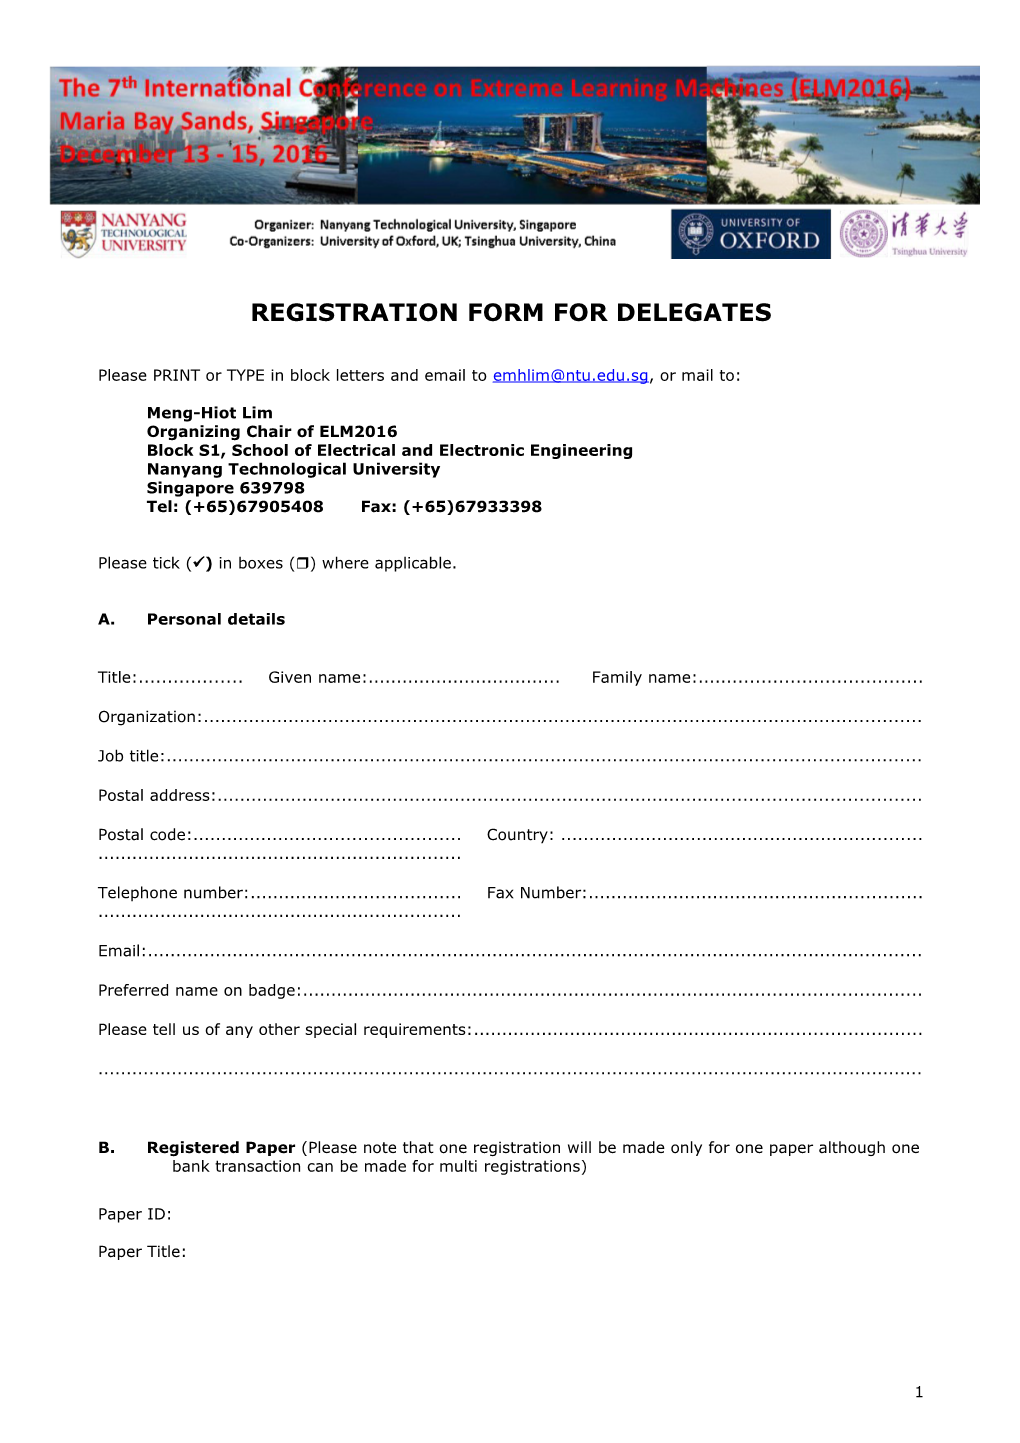 Registration Form for Delegates